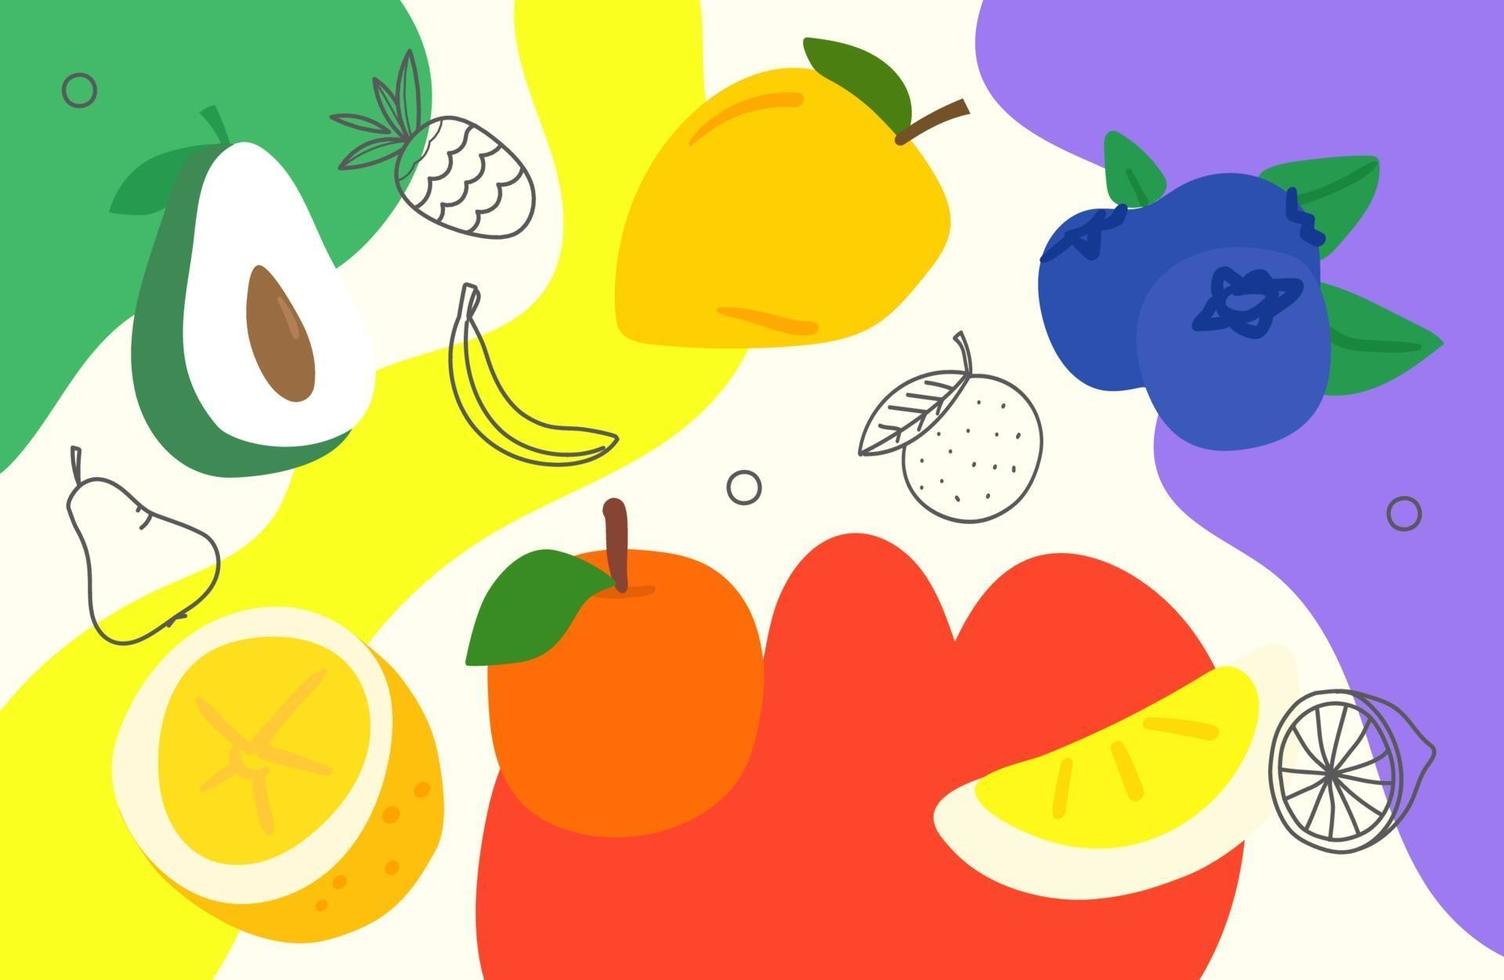 papel de parede artístico do doodle criativo com frutas. fundo abstrato com formas geométricas de cor mão desenhada. ilustração de estilo esboçado vetor